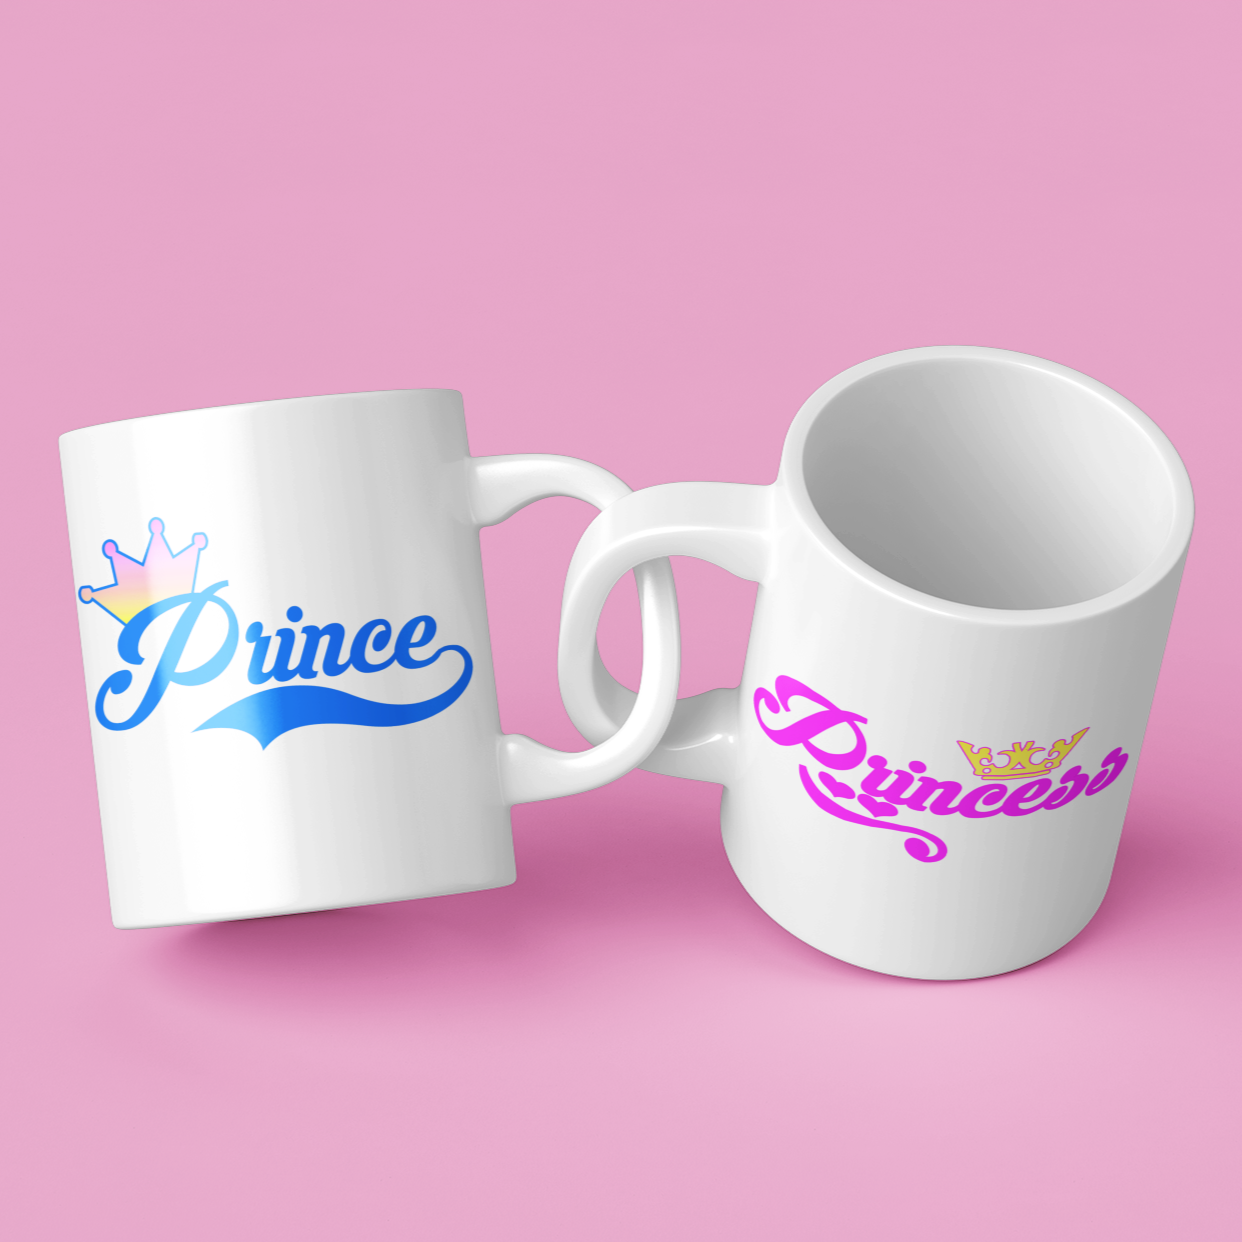 Prince & princess Couples Mug Set Wedding Mug Couples Gift